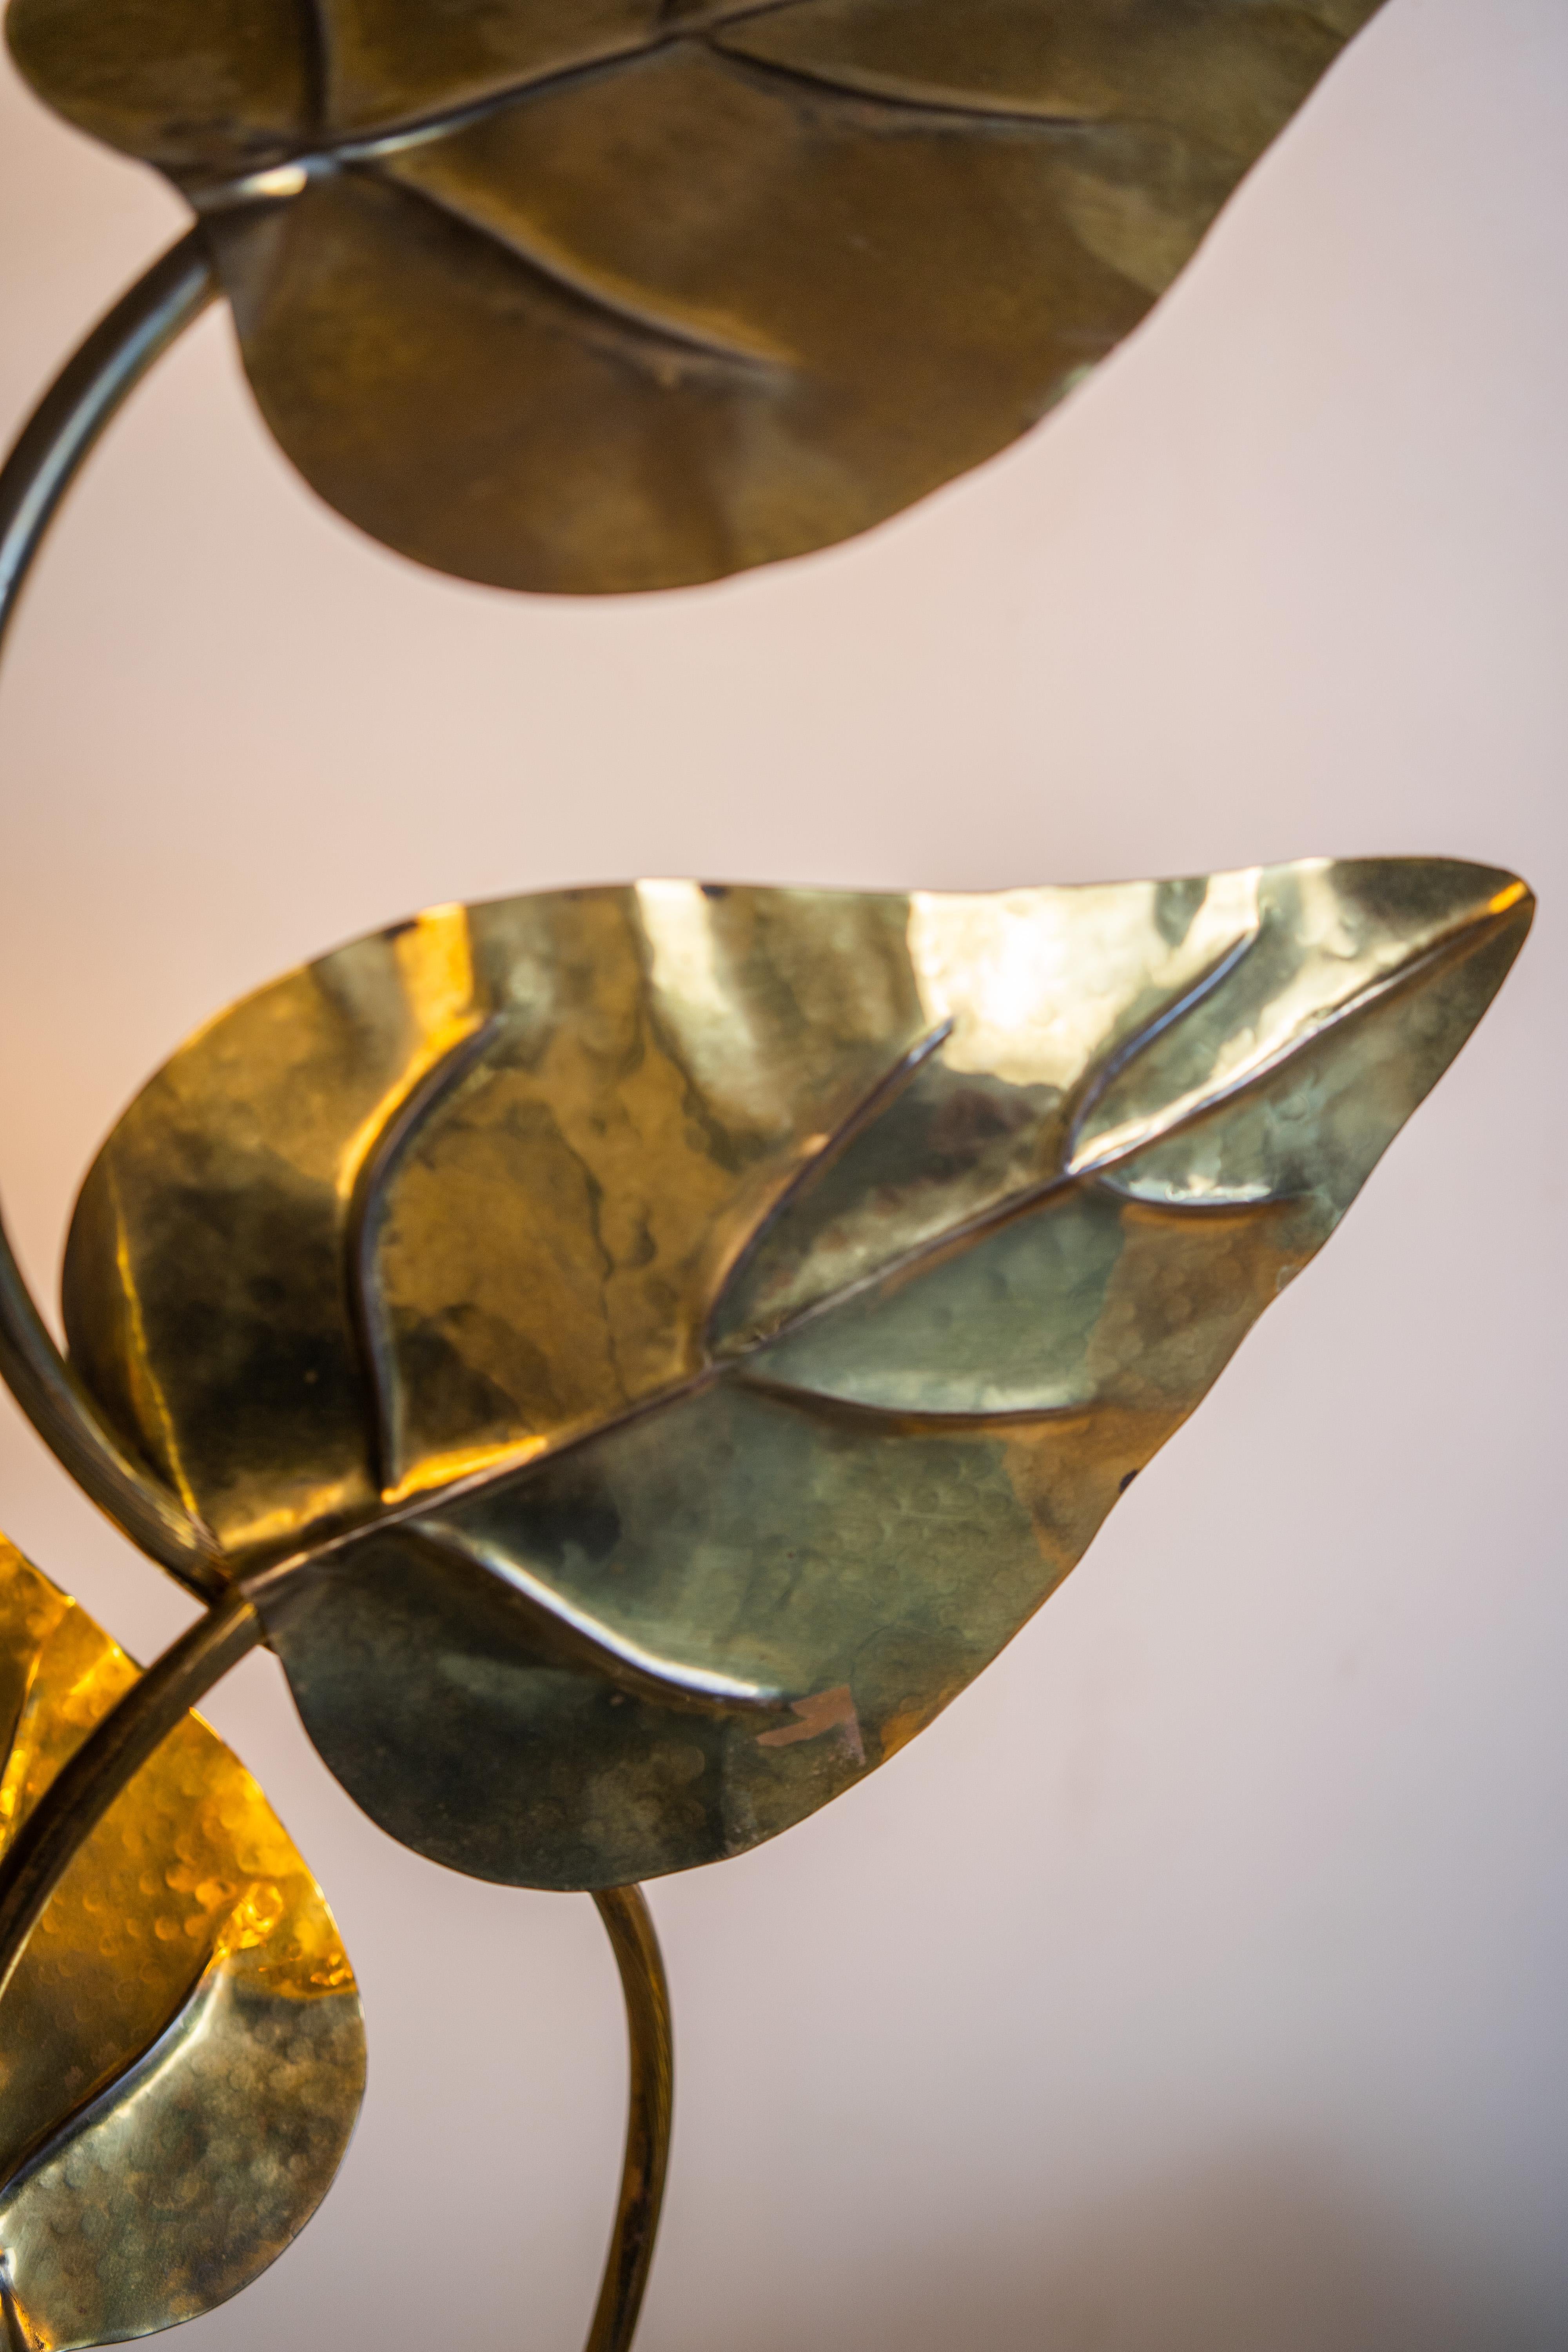 Lampadaire en forme de feuille en laiton attribué à Tommaso Barbi, Italie, 1970.

fait à la main par l'Artis, Using brass a créé un lampadaire en forme de trois feuilles de rhubarbe. 

Sa lumière chaude et agréable crée une atmosphère